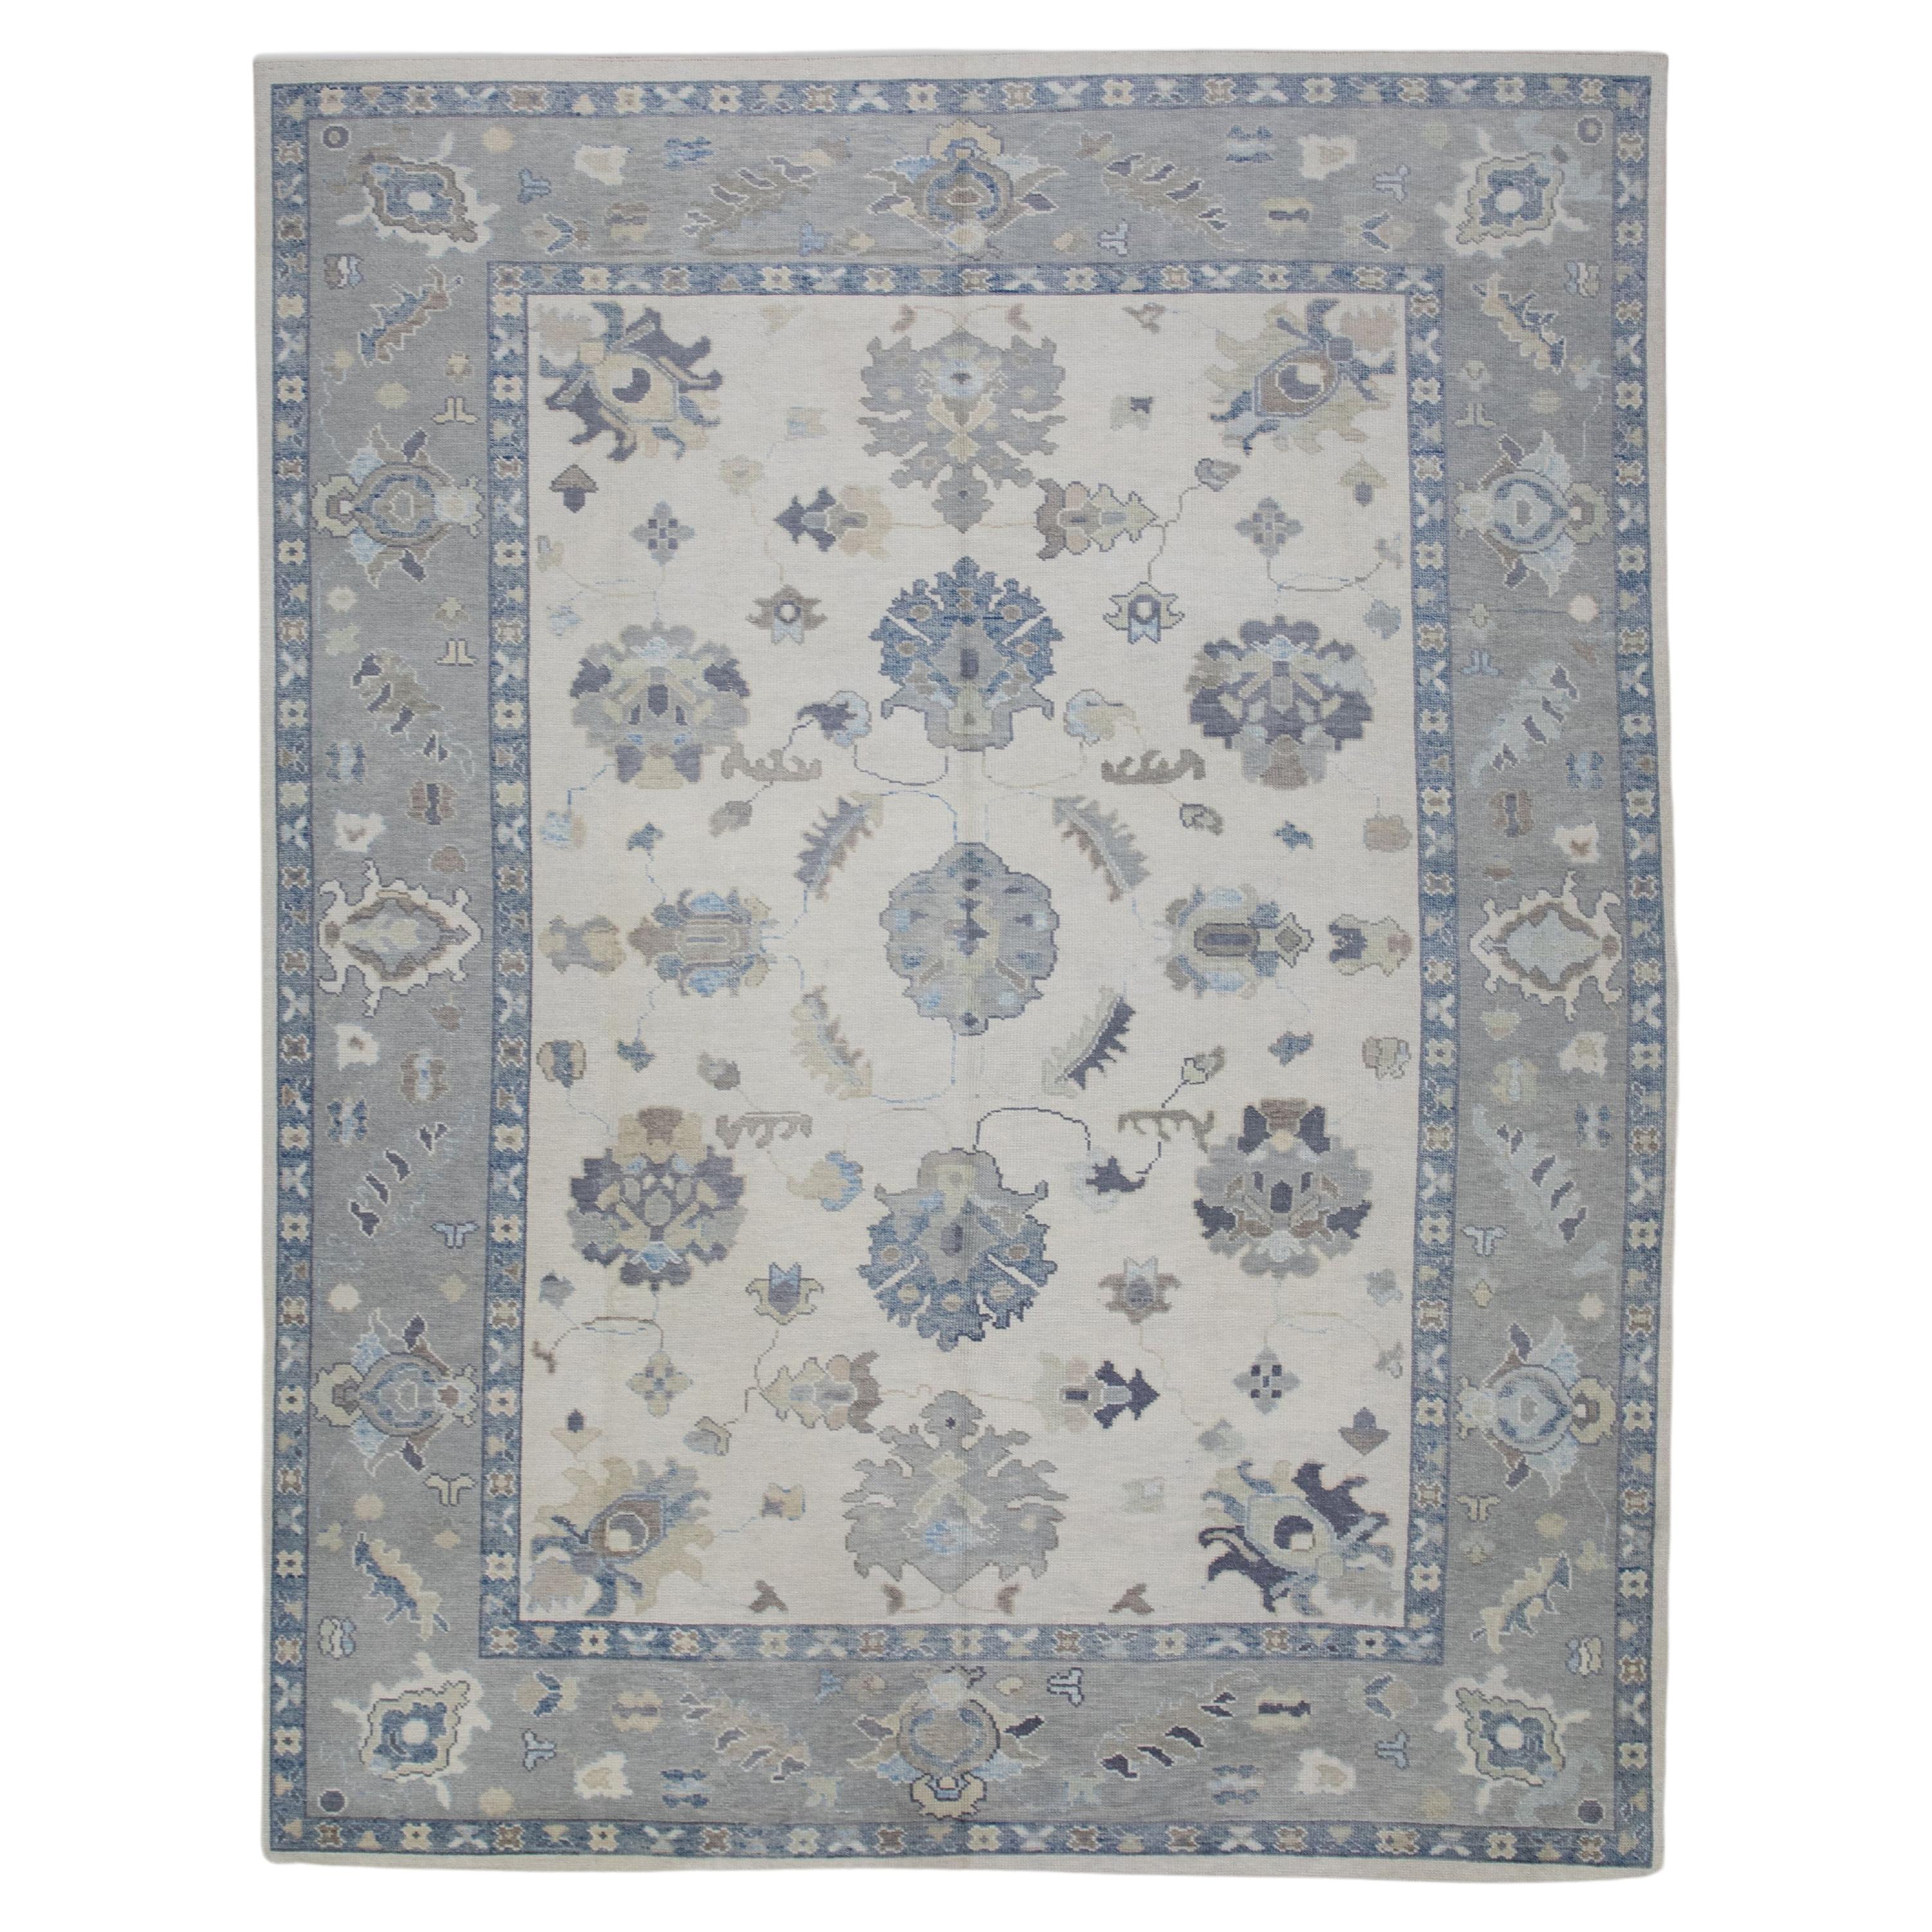 Handgewebter türkischer Oushak-Teppich aus Wolle in Grau & Blau mit Blumenmuster 9'2" X 12'2"